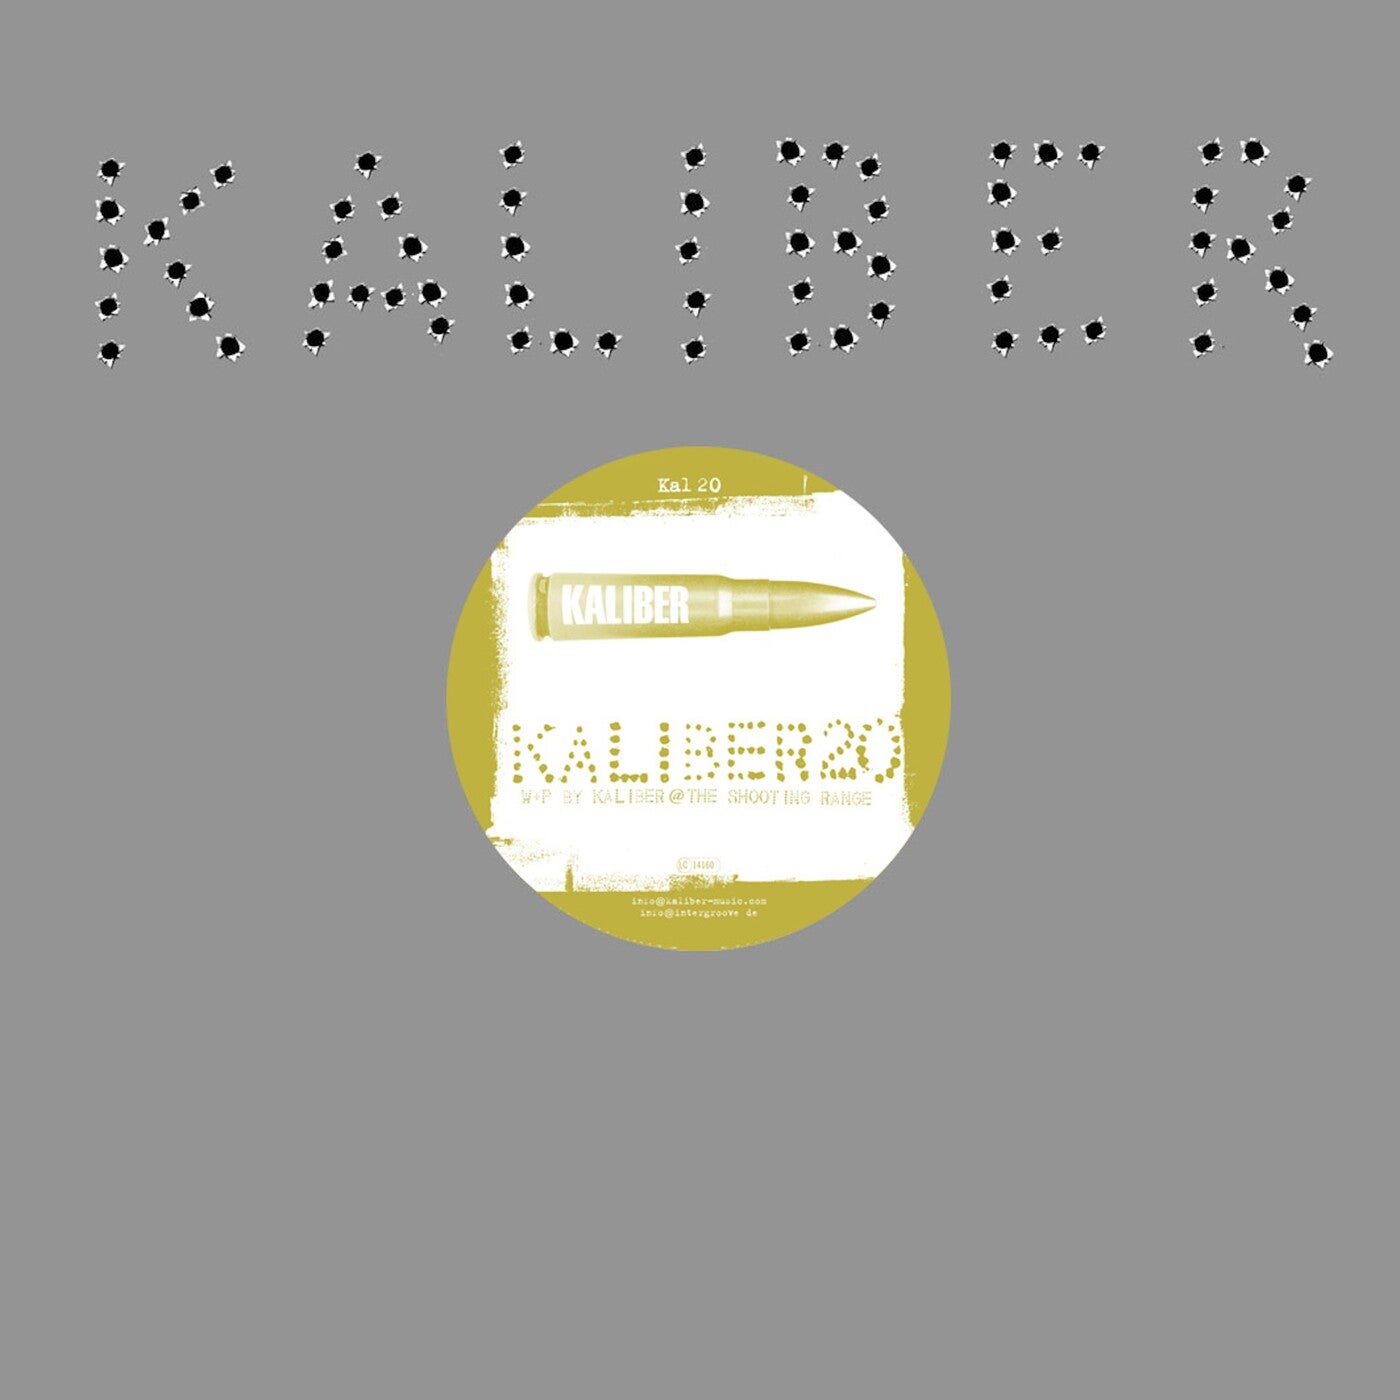 Kaliber 20